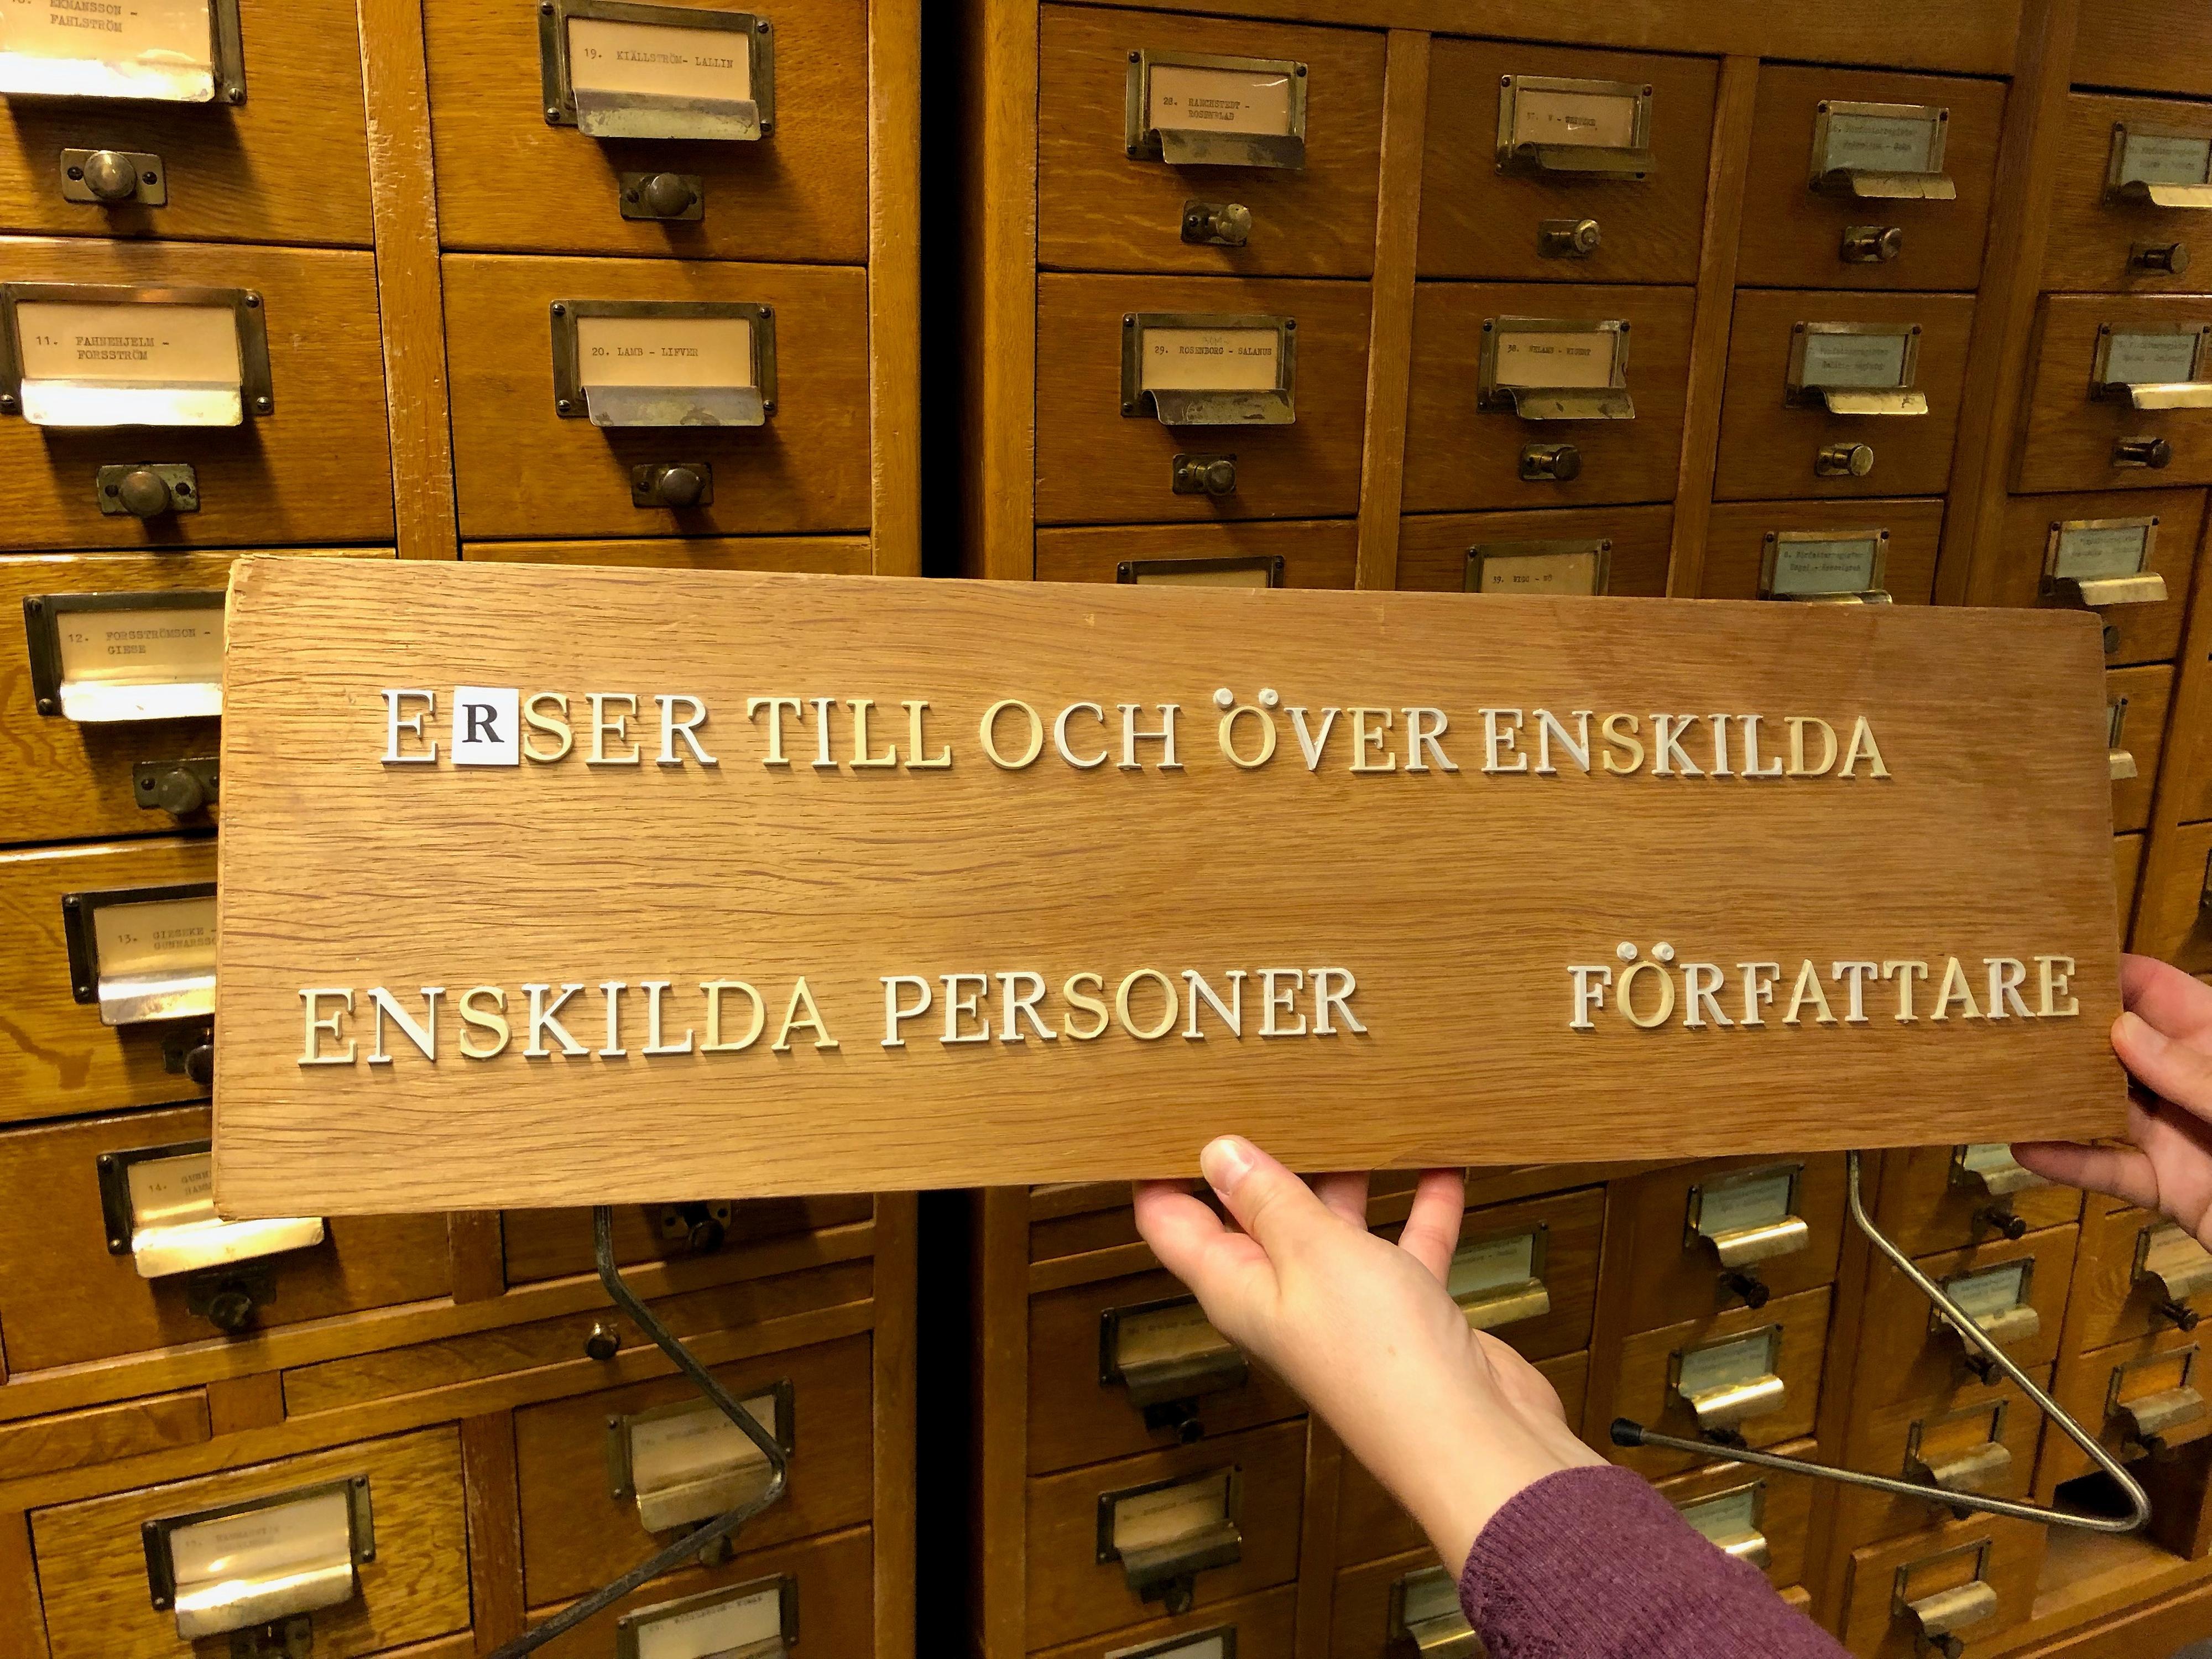 Två händer håller upp en äldre skylt i trä framför en kortkatalog. Texten på skylten lyder Verser till och över enskilda, enskilda personer författare. Någon bokstav saknas.